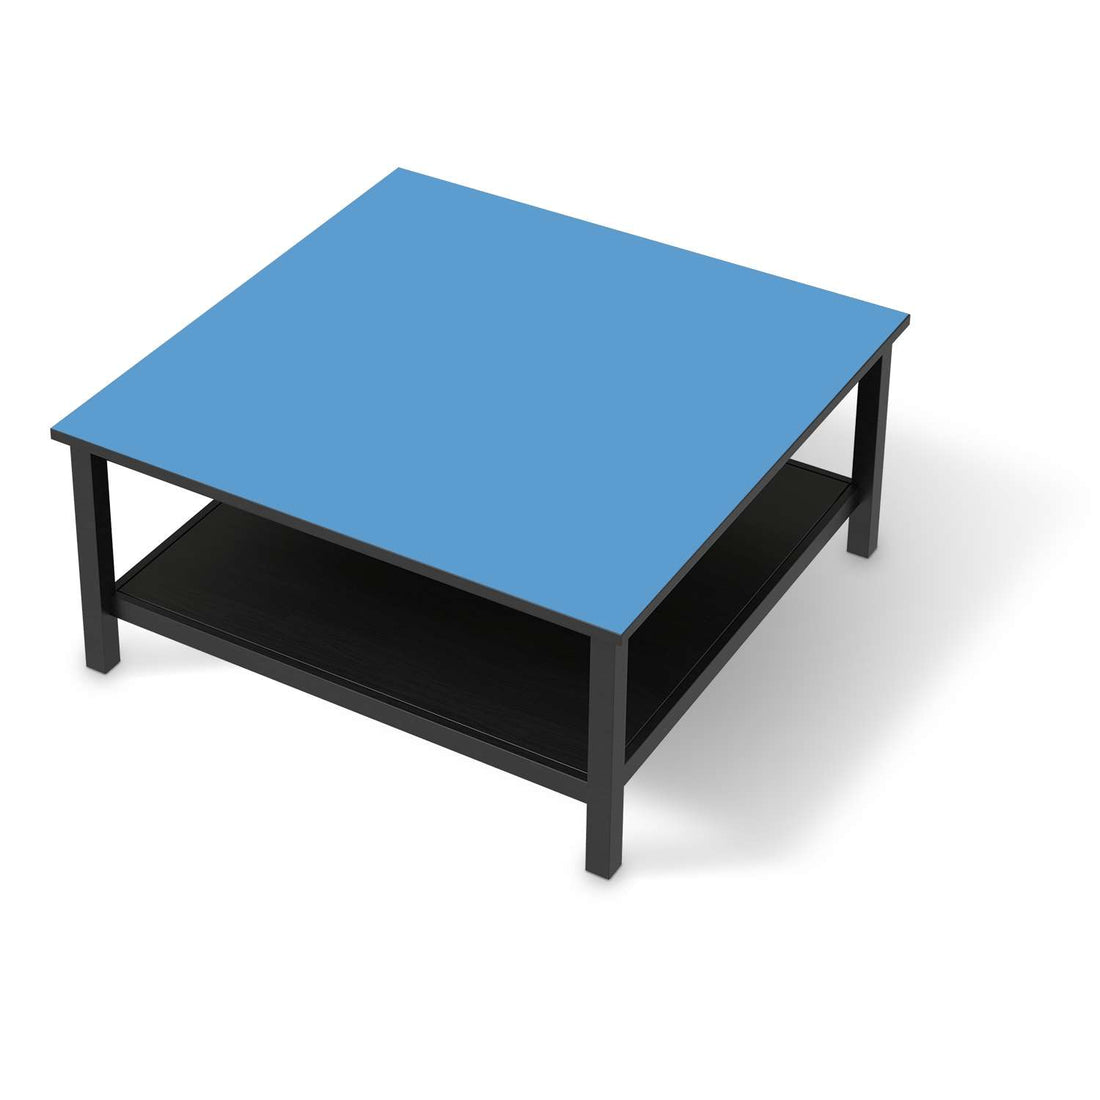 Klebefolie für Möbel Blau Light - IKEA Hemnes Couchtisch 90x90 cm - schwarz